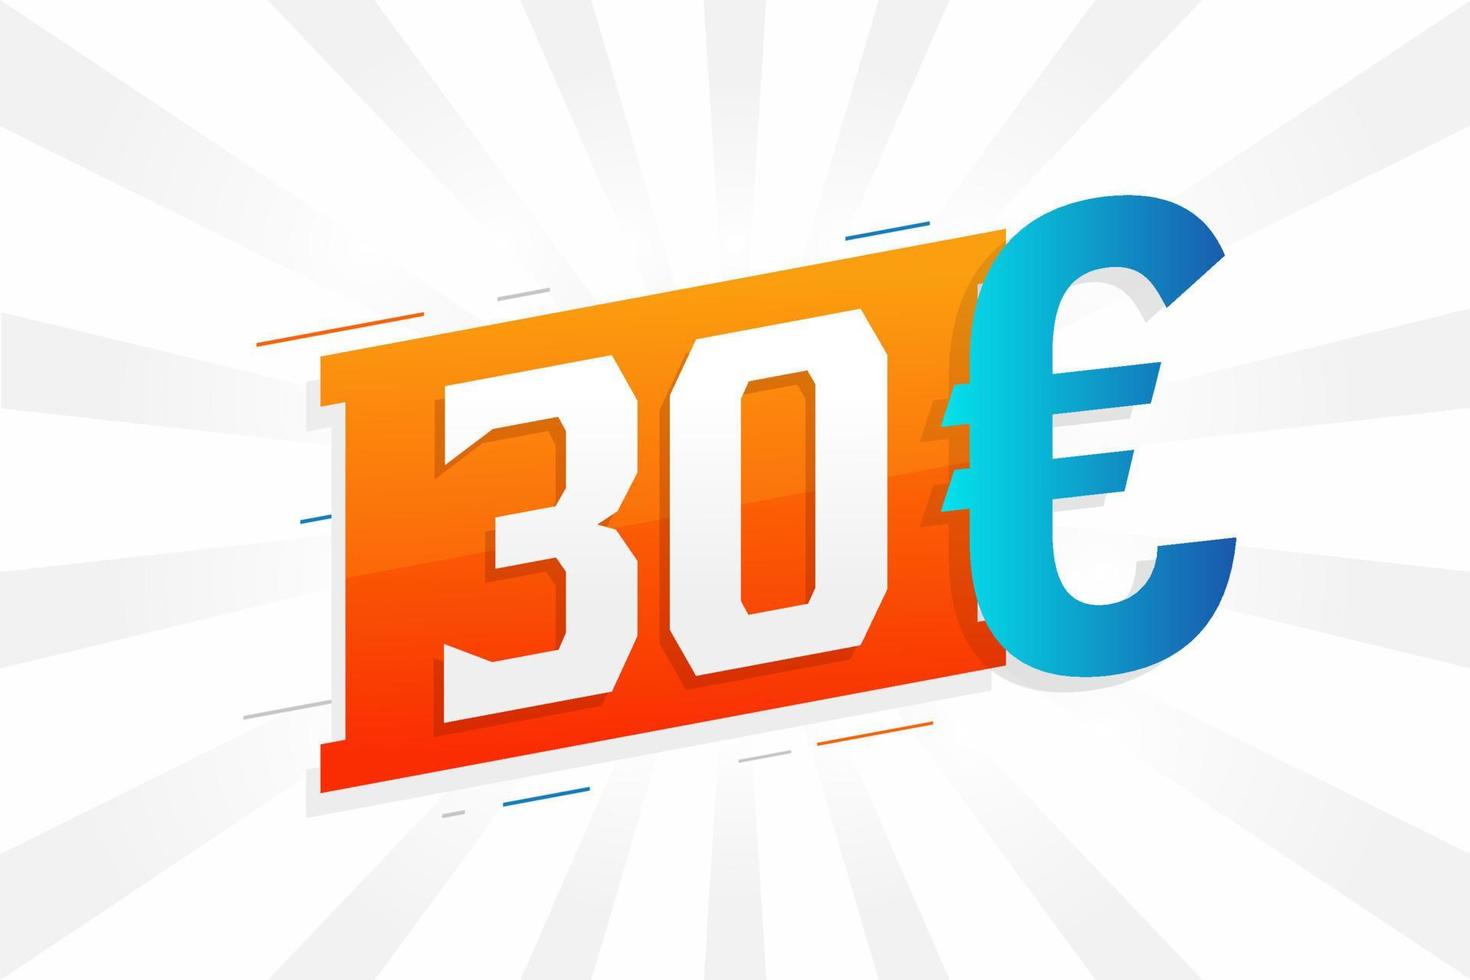 30 euro valuta vector tekst symbool. 30 euro Europese unie geld voorraad vector